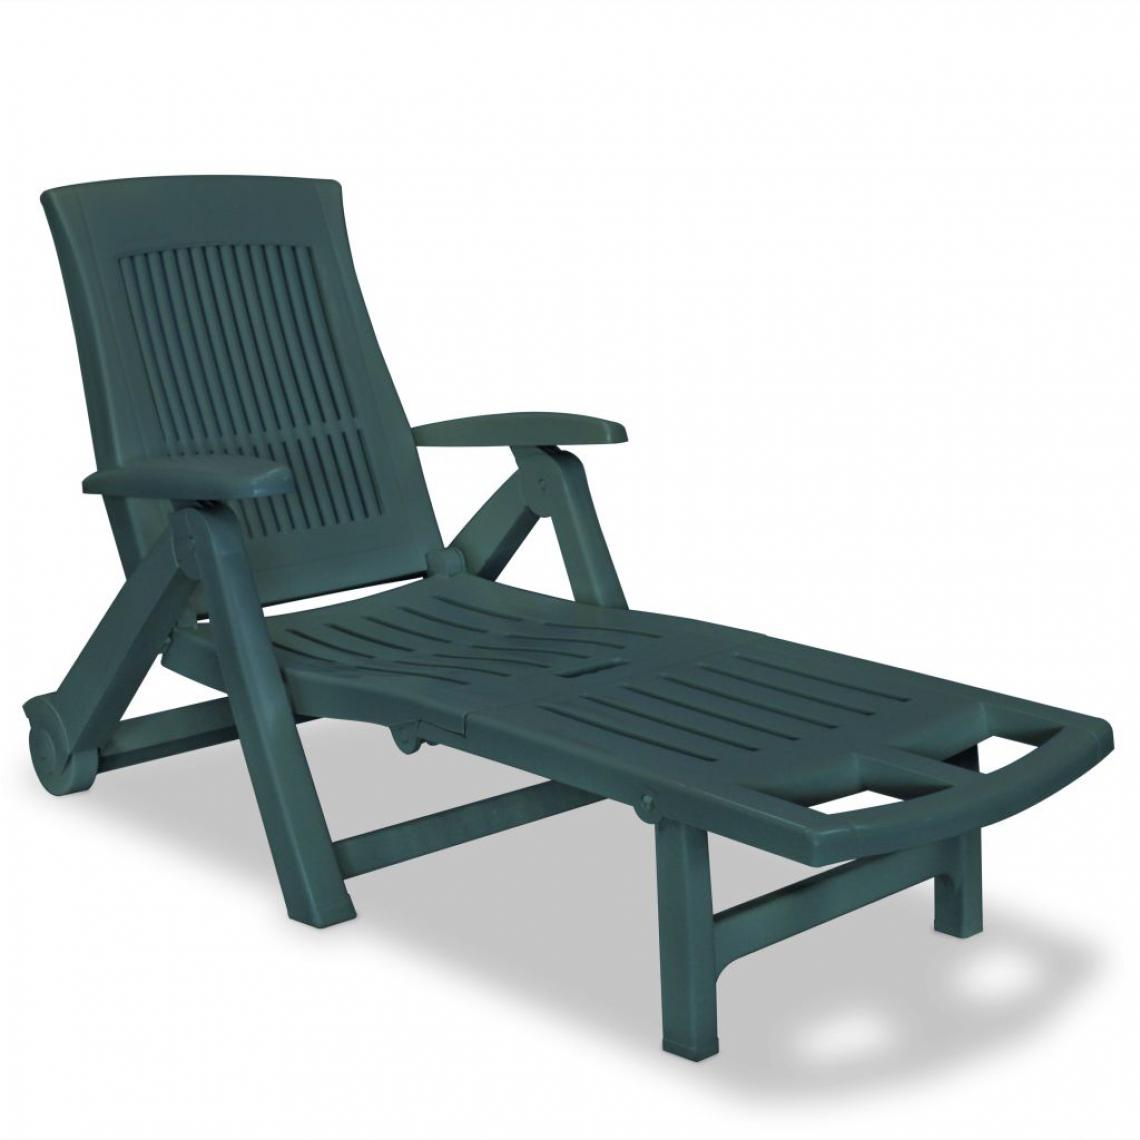 Chunhelife - Chaise longue avec repose-pied Plastique Vert - Transats, chaises longues